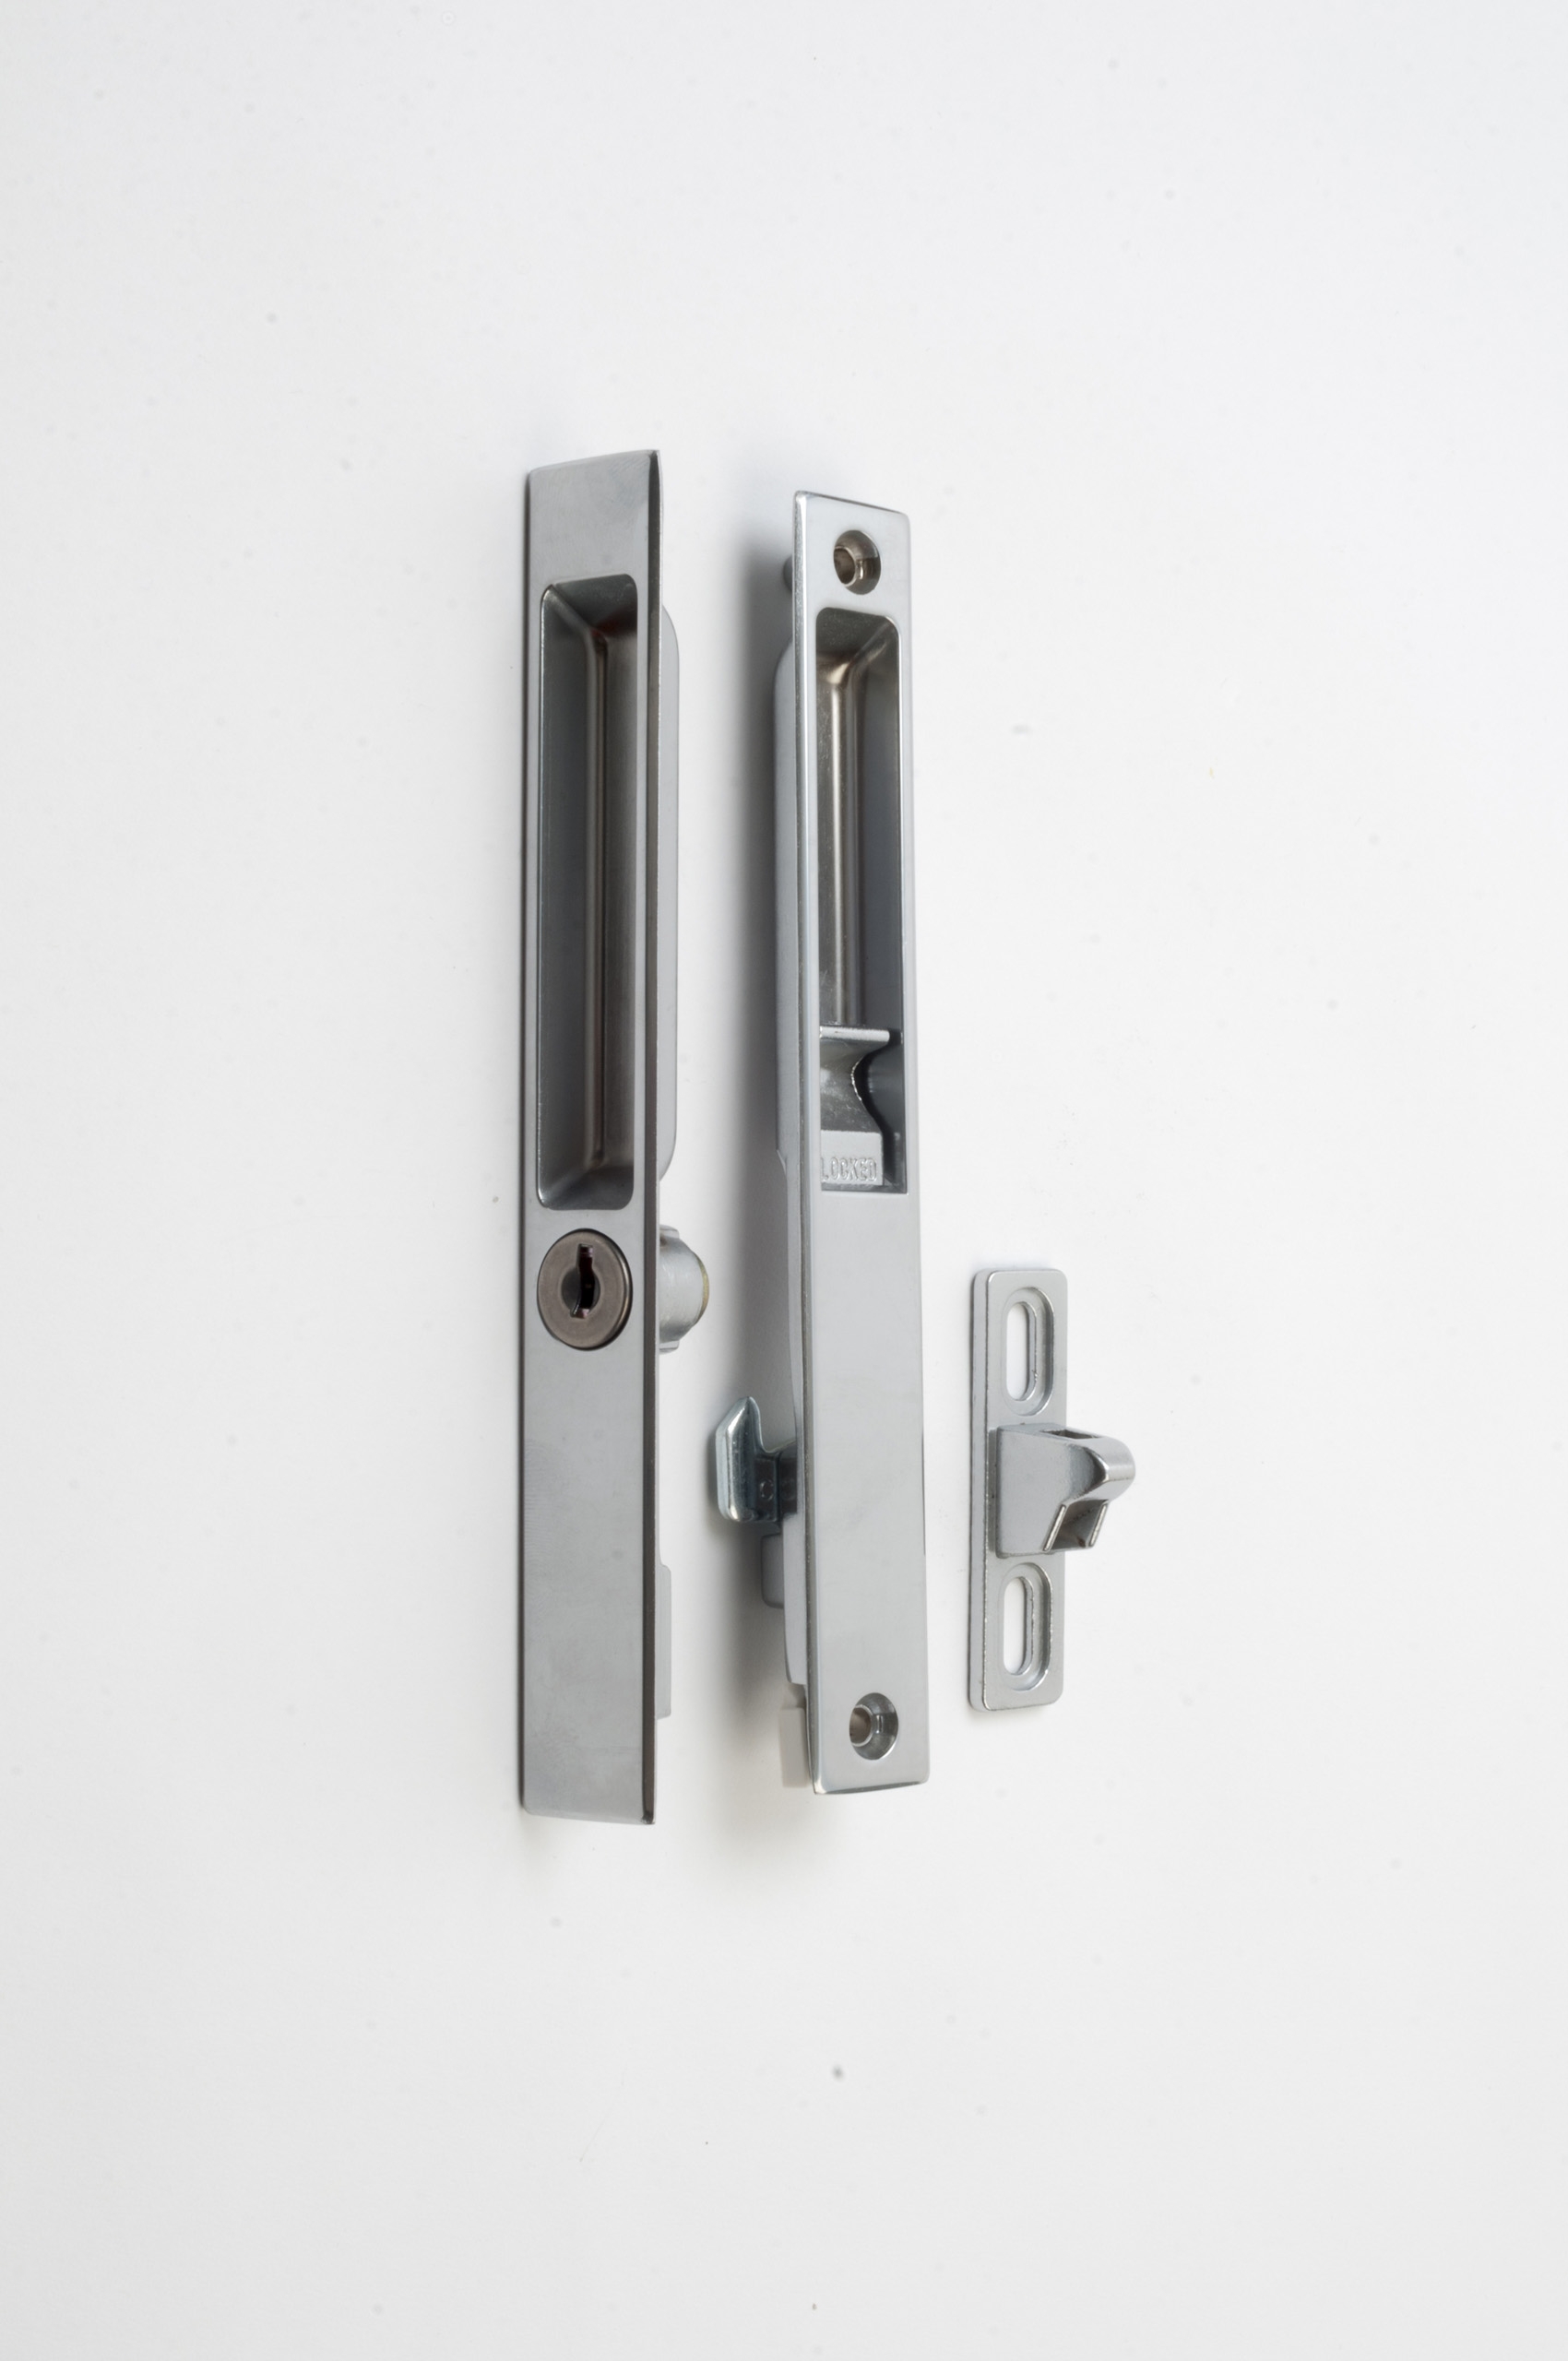 Sliding Glass Door Lock Options1700 X 2560